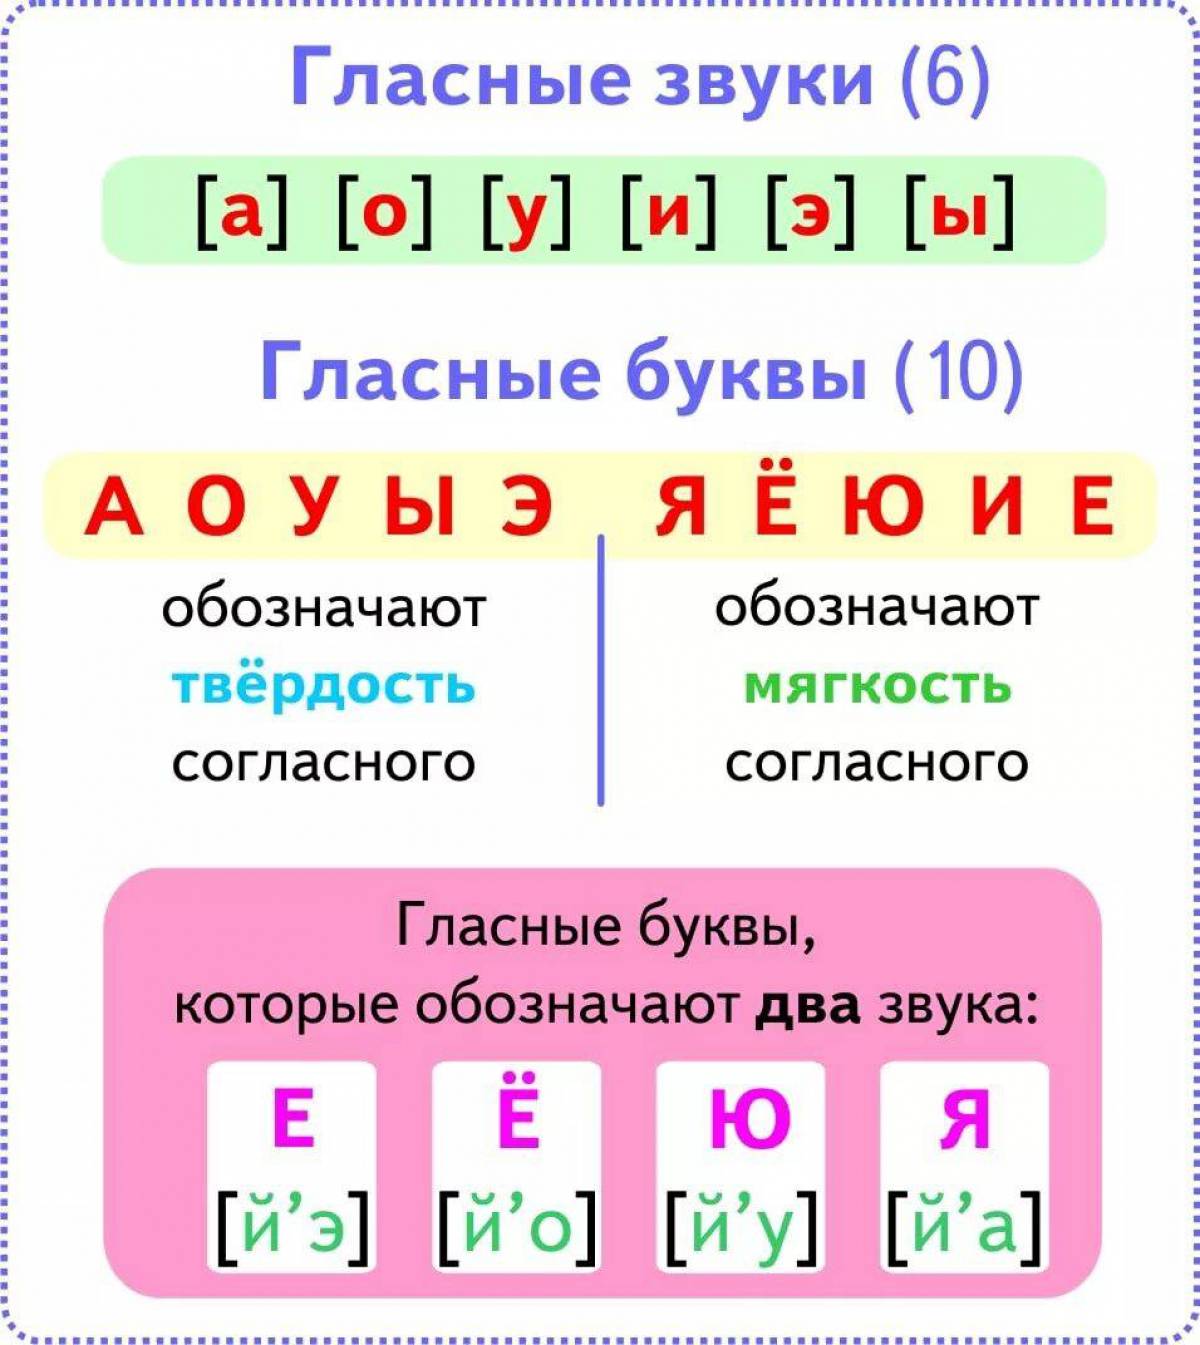 Правила гласных. Звуки гласных букв в русском языке таблица. Таблица гласные звуки 2кл. Гласные звуки в русском языке 1 класс таблица. Гласные буквы и звуки в русском языке 2 класс правило.